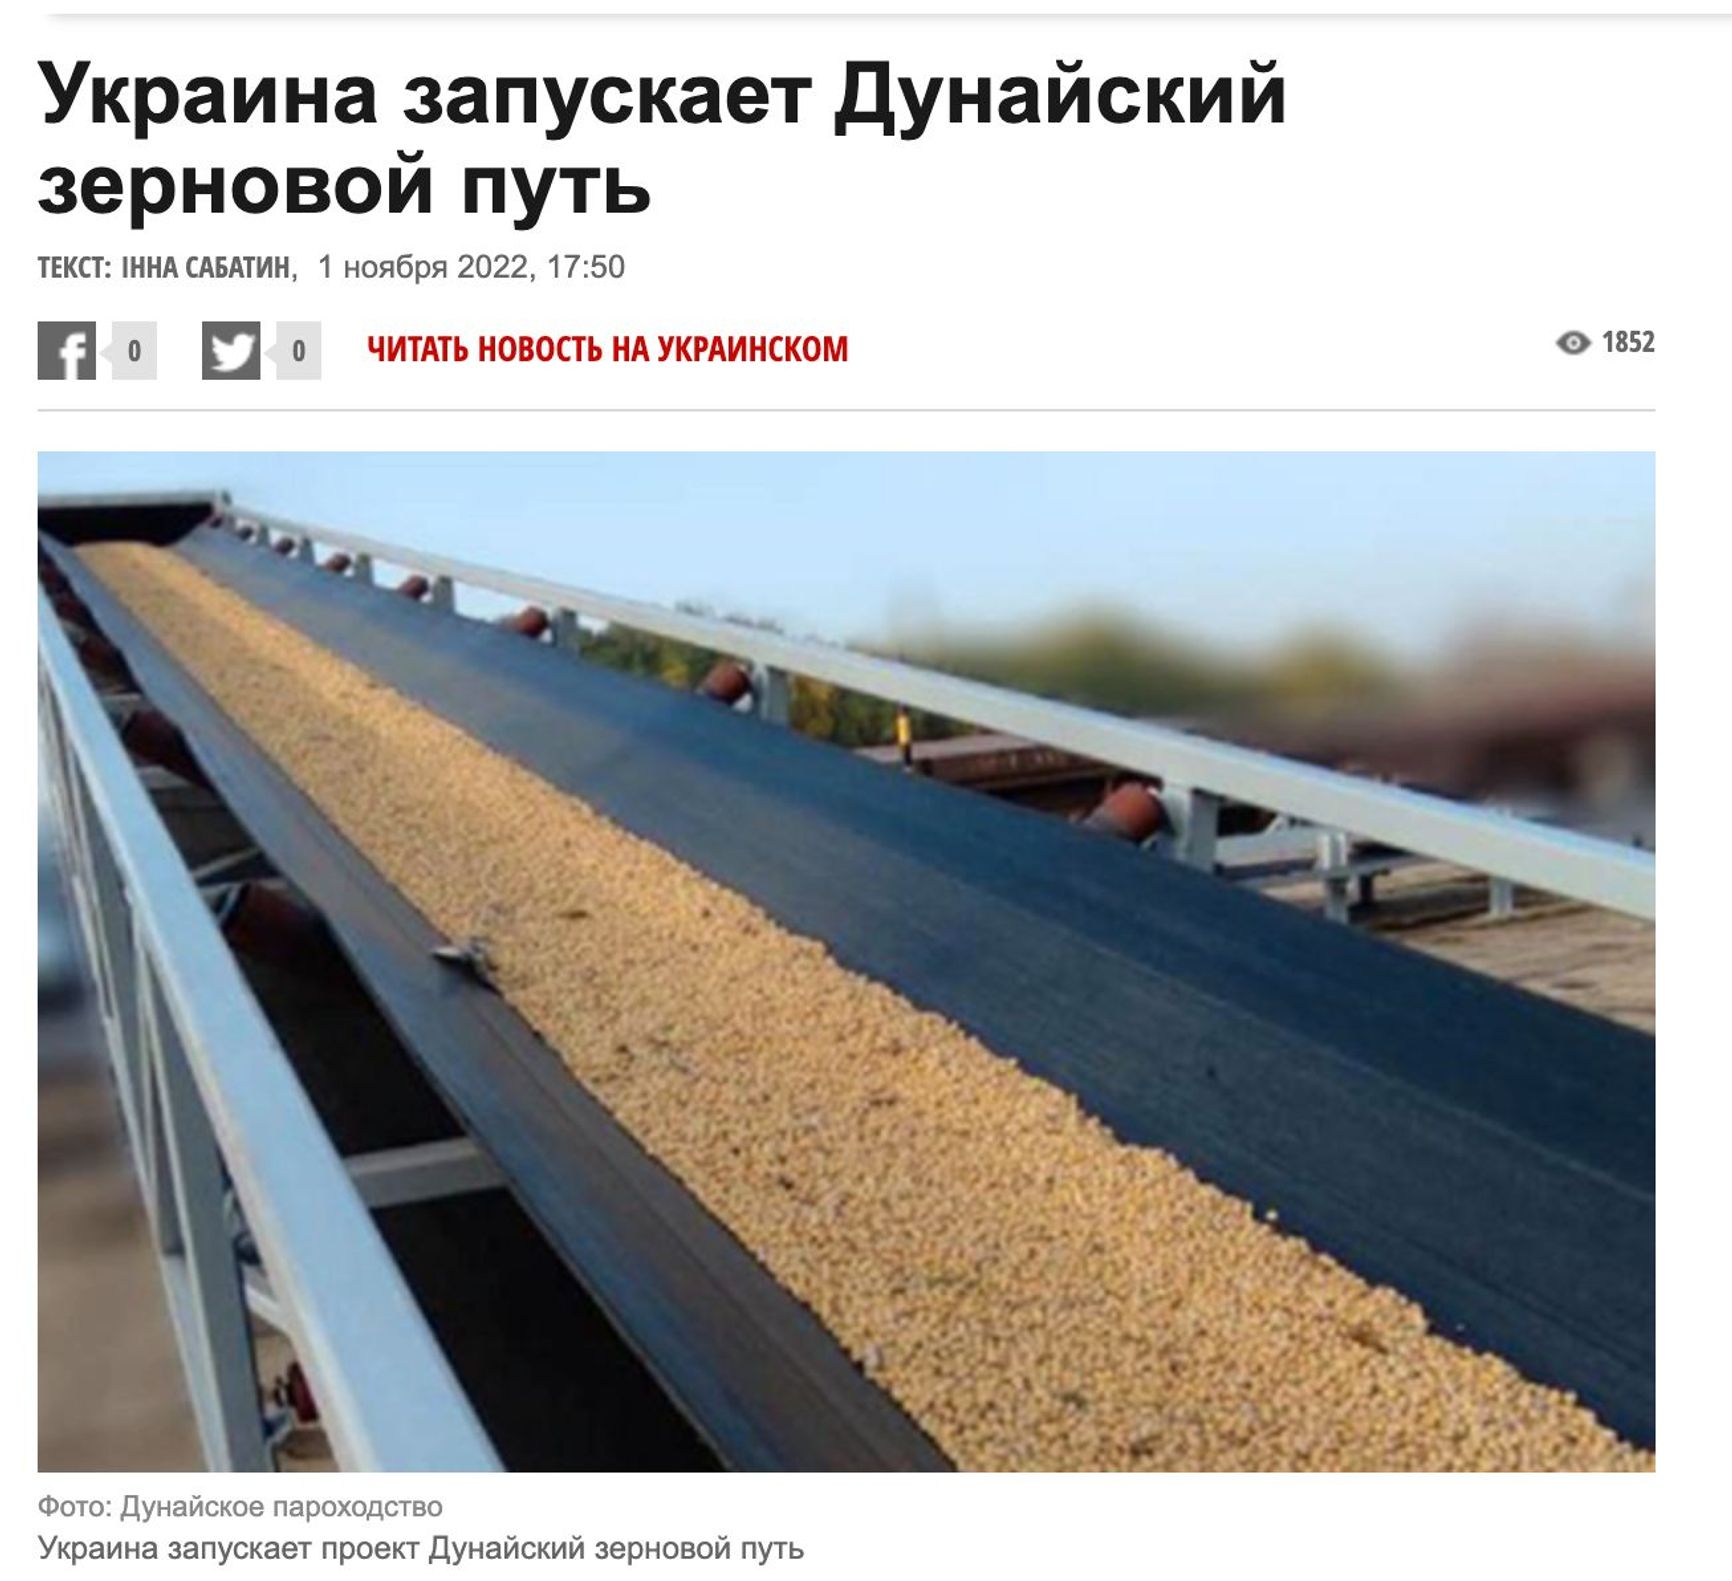 “Ukraine launches Danube grain route”